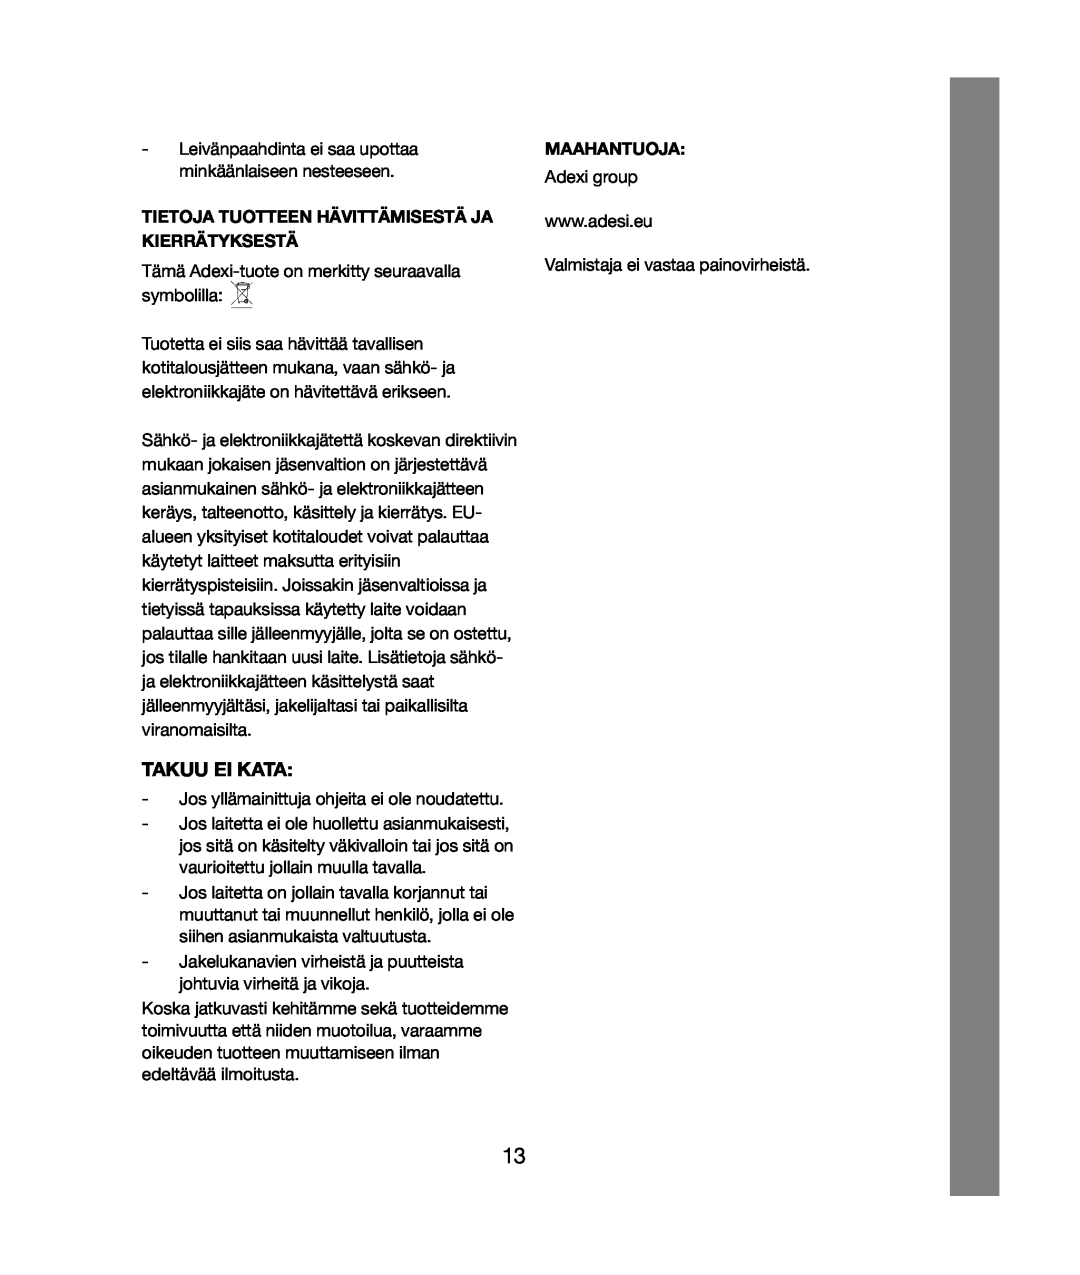 Melissa 021 & 028 manual Takuu Ei Kata, Tietoja Tuotteen Hävittämisestä Ja Kierrätyksestä, Maahantuoja 